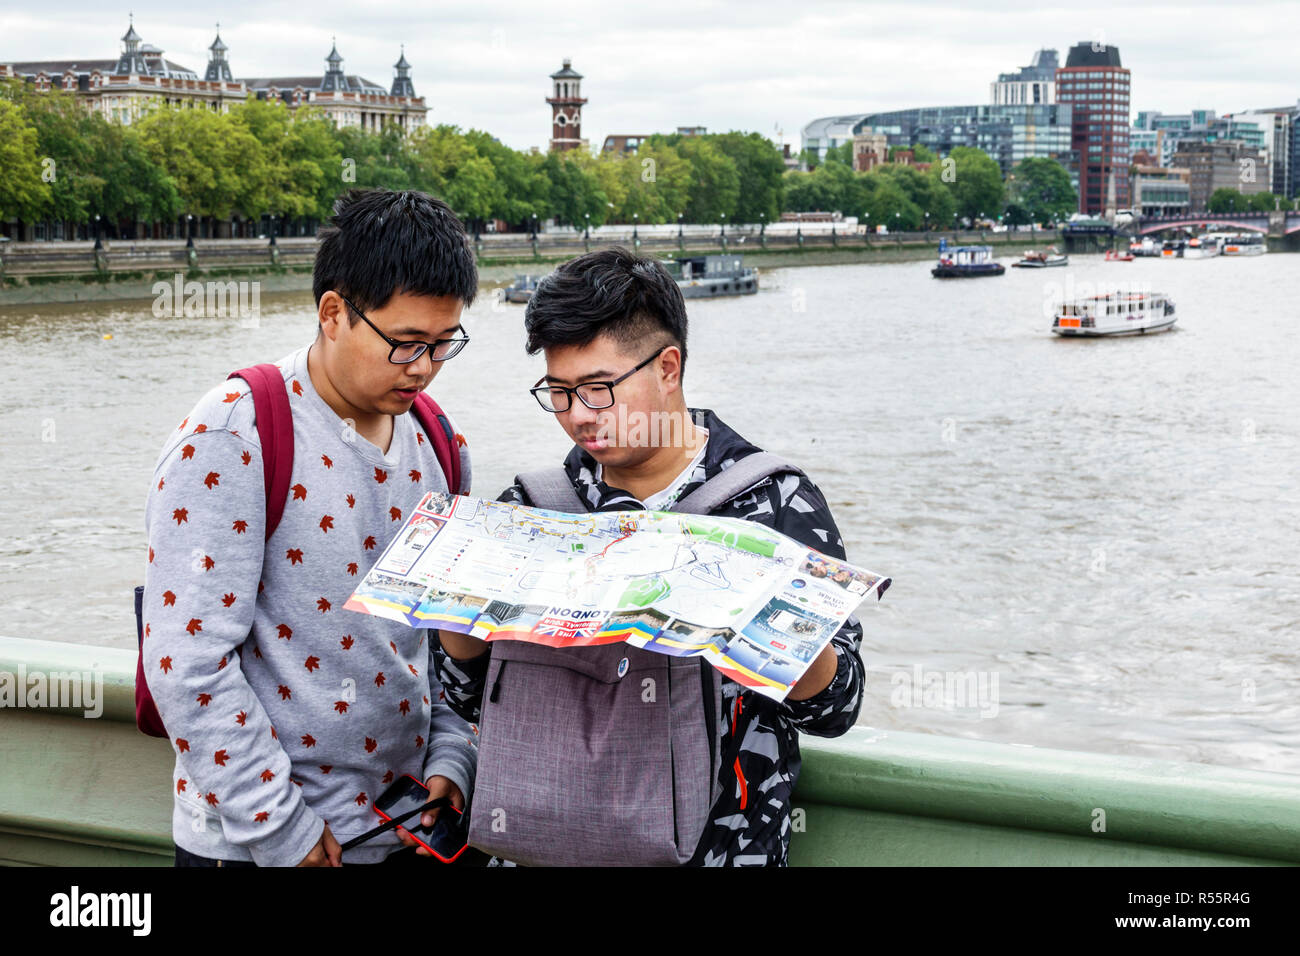 Londres Angleterre, Royaume-Uni, Westminster Bridge, Thames River, homme asiatique hommes, garçons, enfant enfants enfants enfants enfants jeunes, adolescents adolescents adolescents lecture Banque D'Images